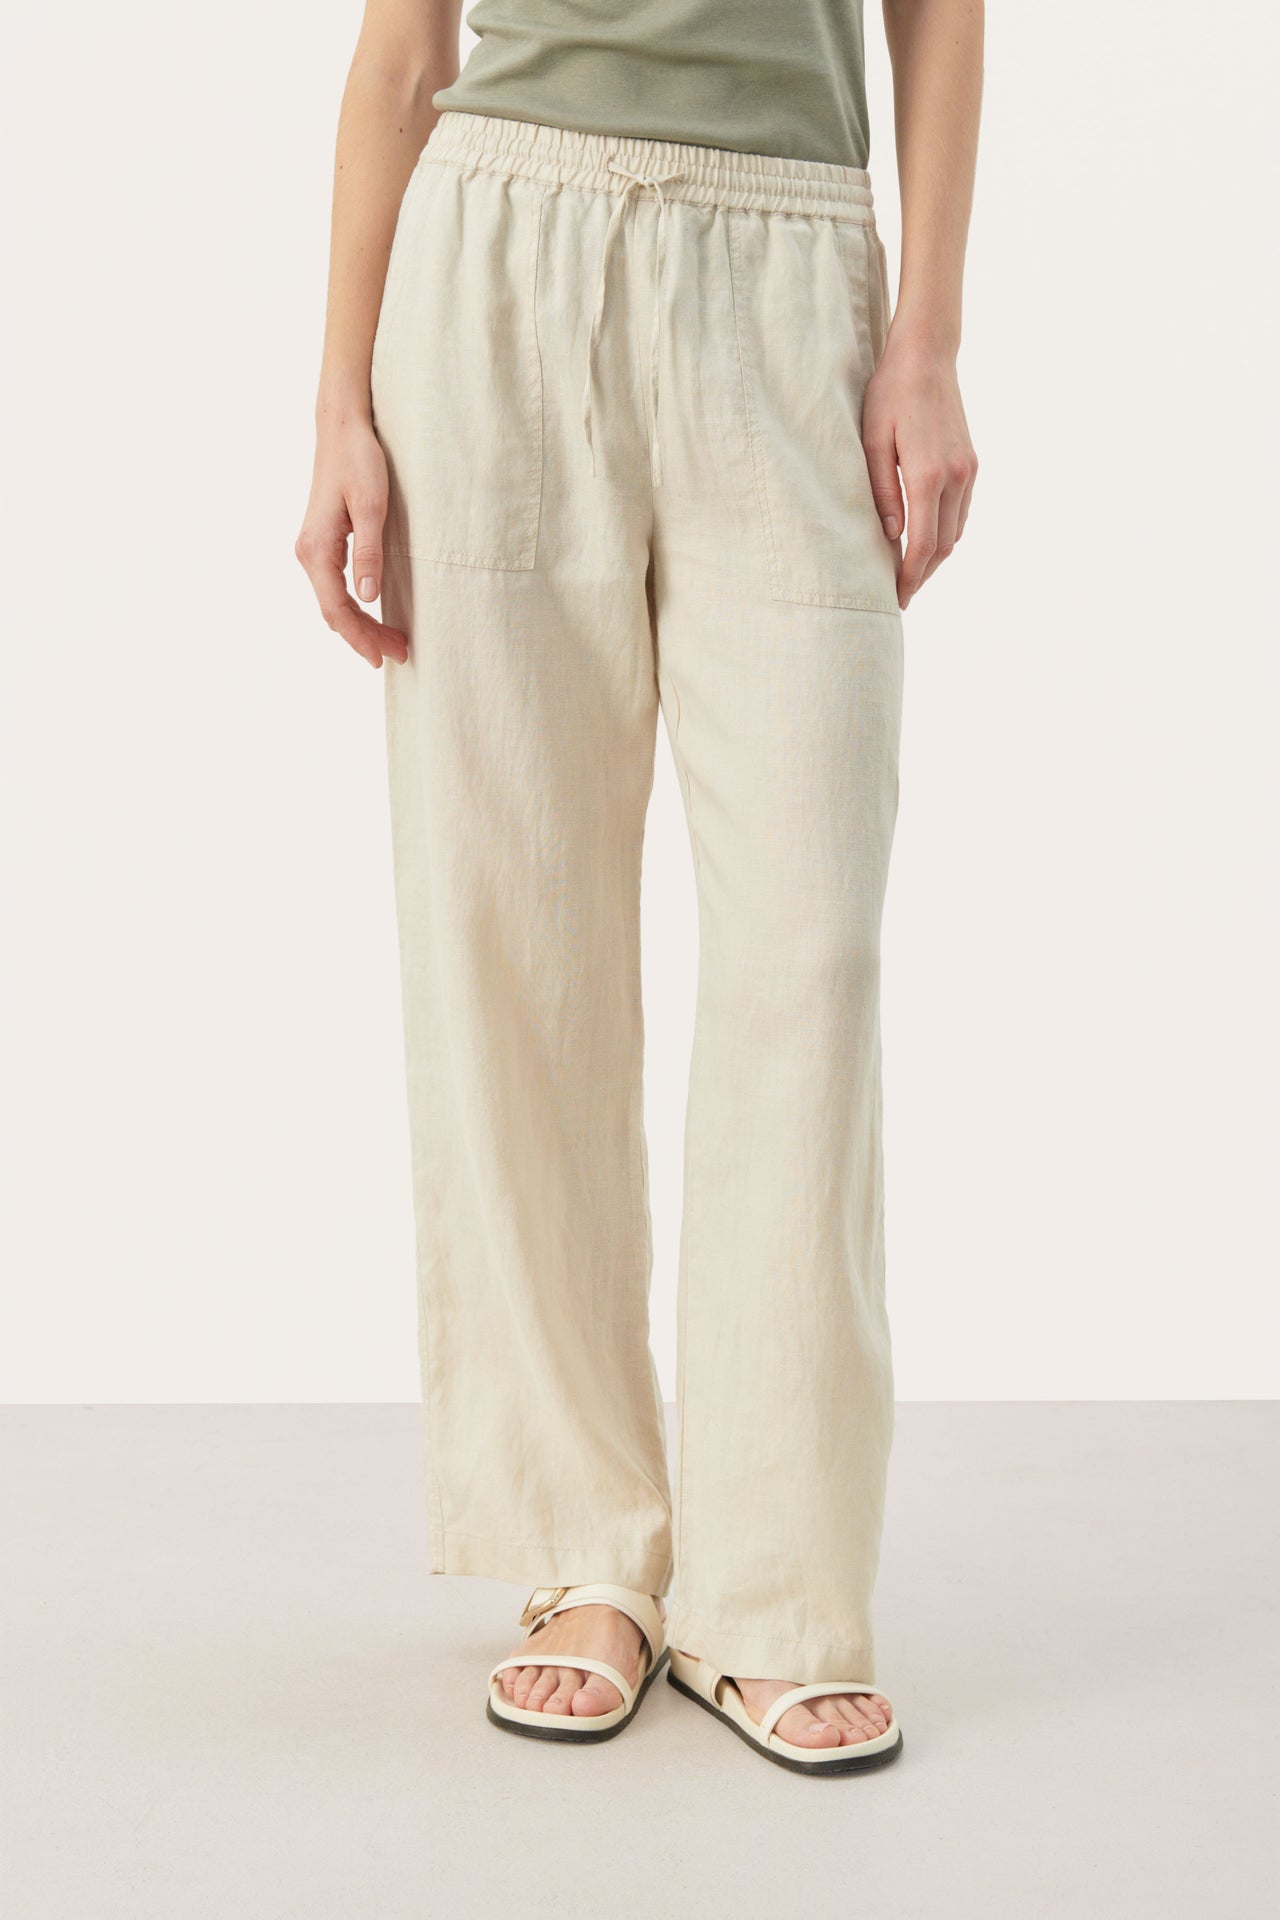 Pantalons / Pants  Boutique Windrush